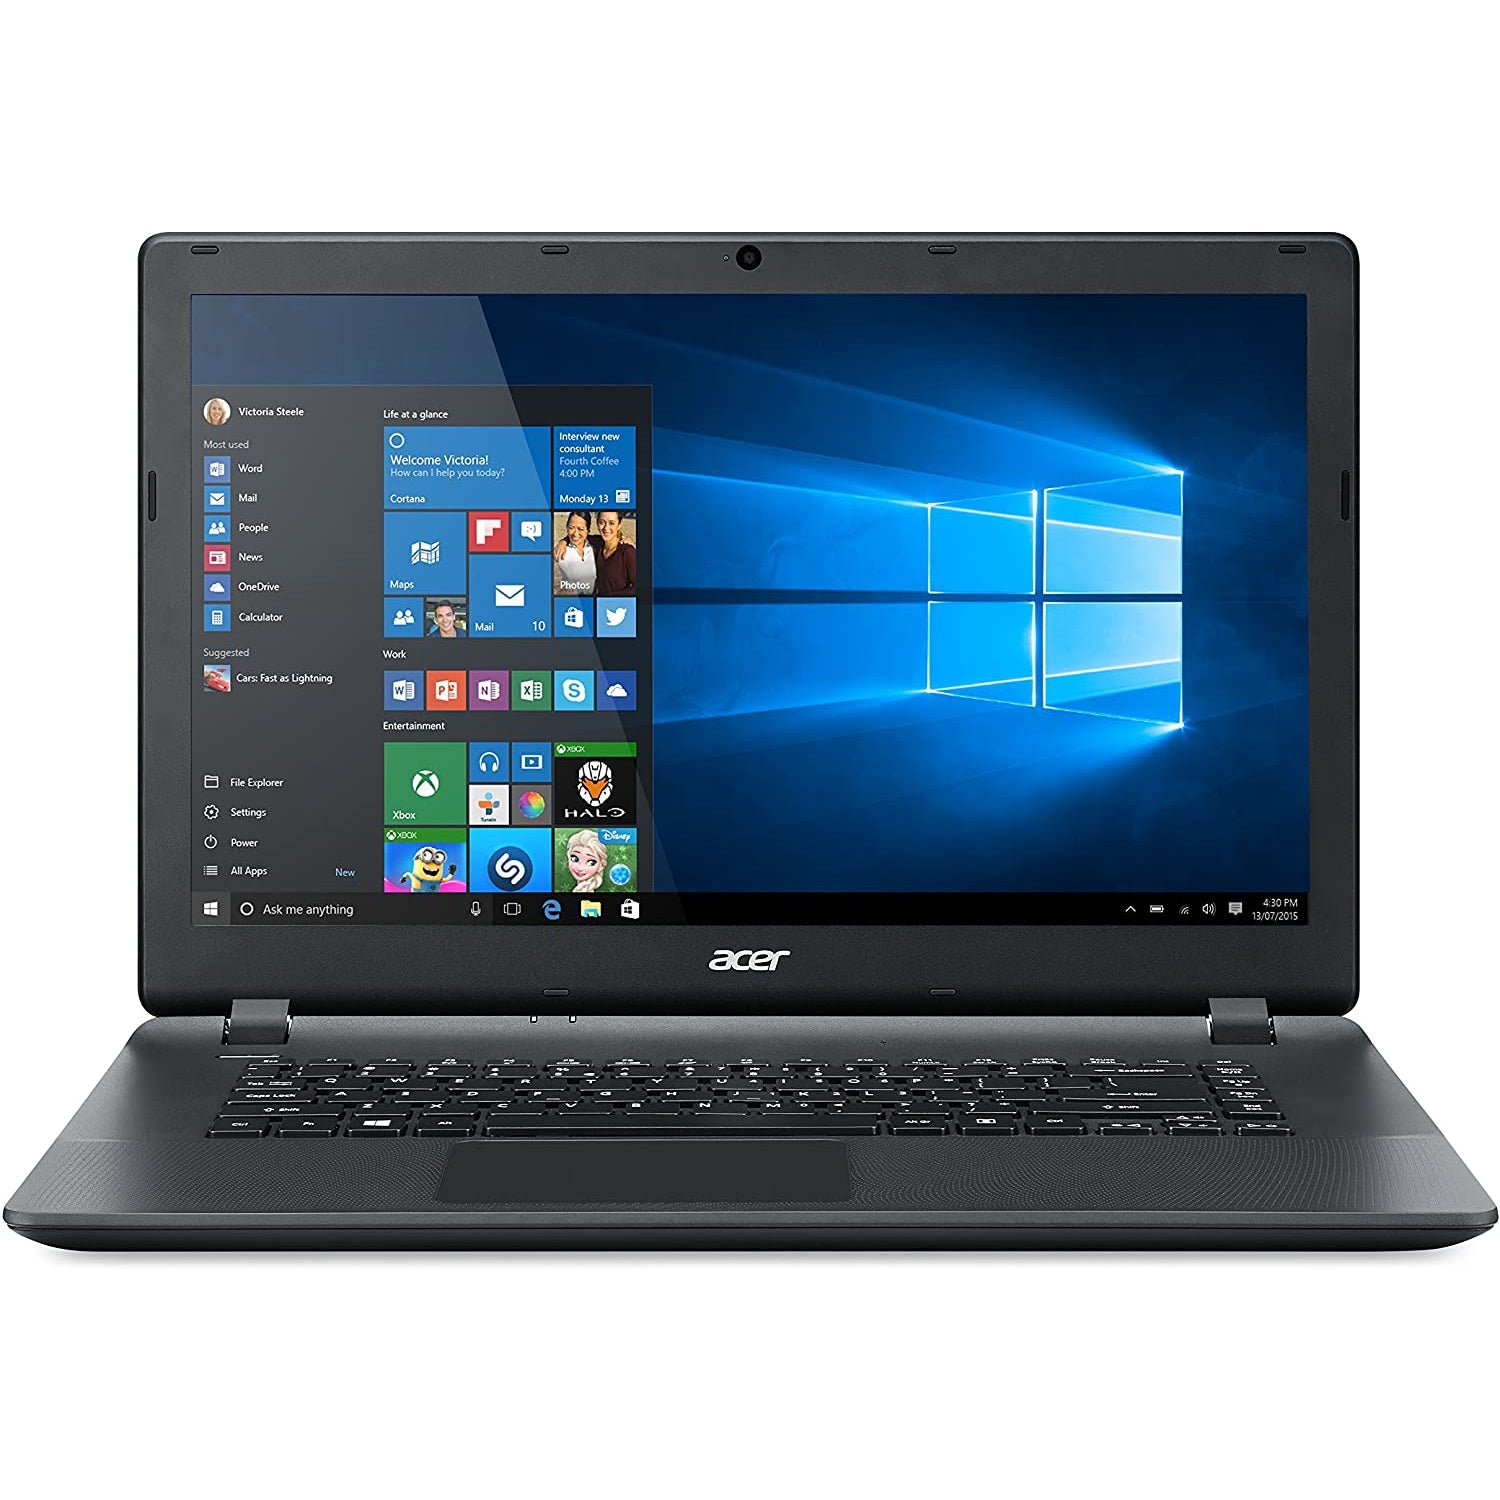 Acer Aspire ES1-521 - AMD A8-6410, 8GB RAM, 1TB HDD, 15.6" - Black